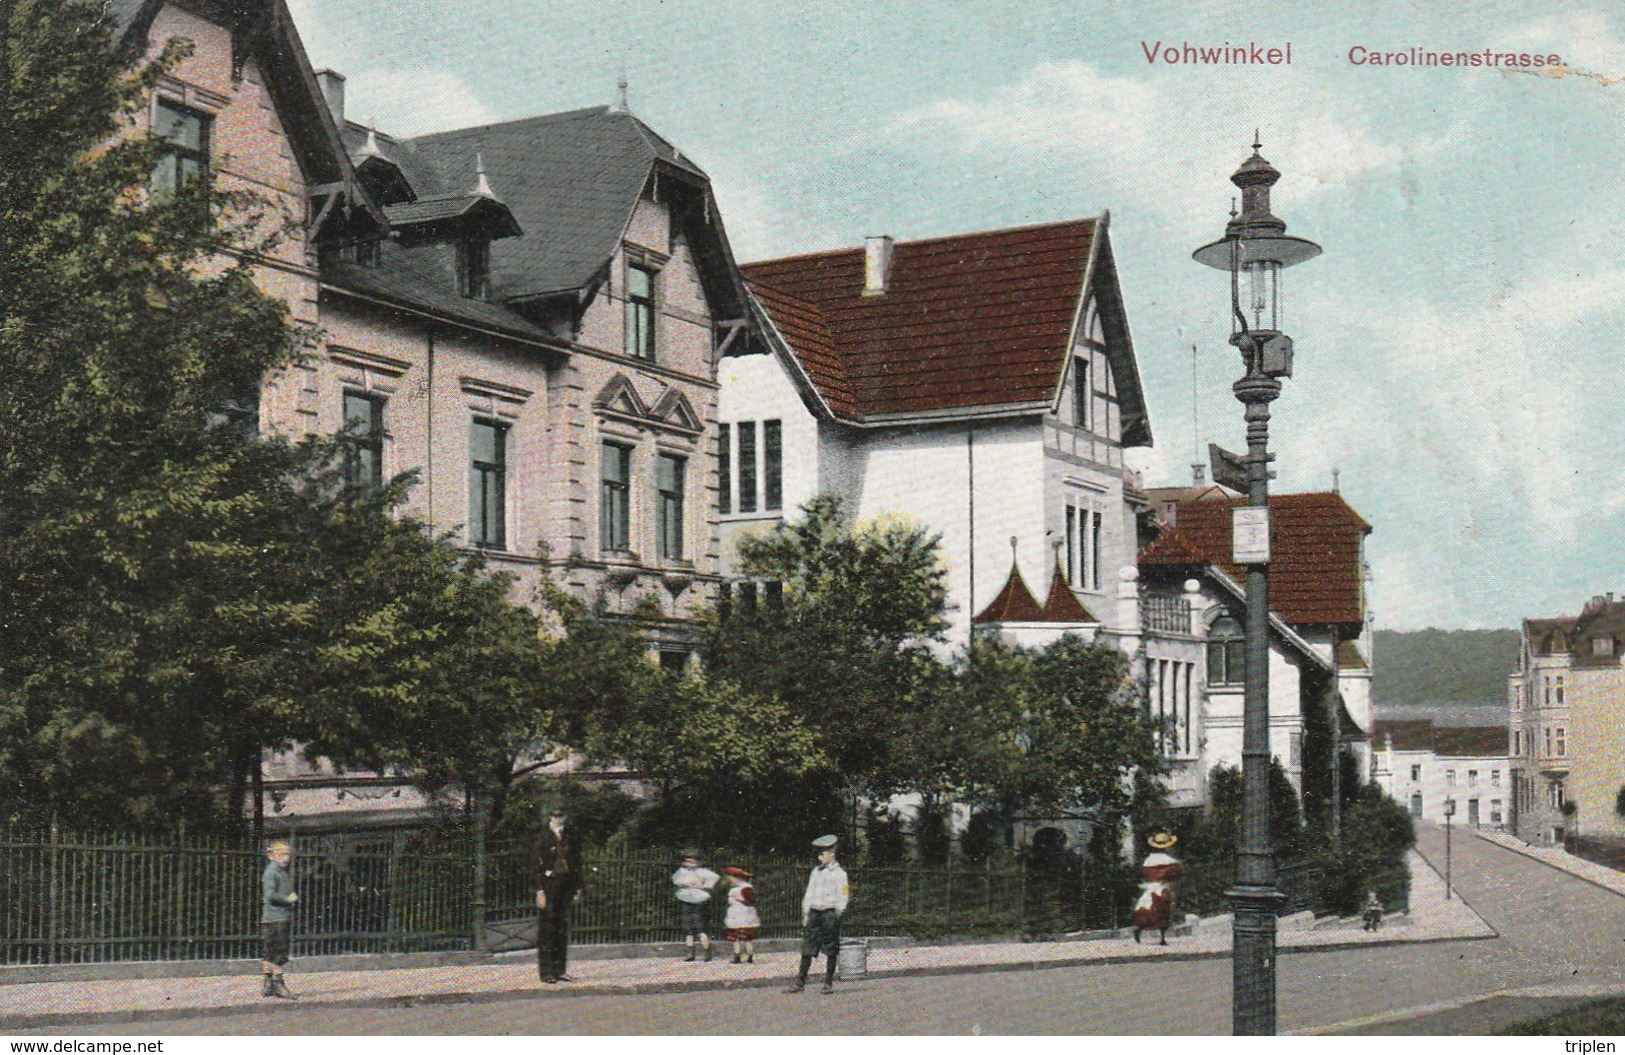 Vohwinkel - Carolinenstrasse - Wuppertal